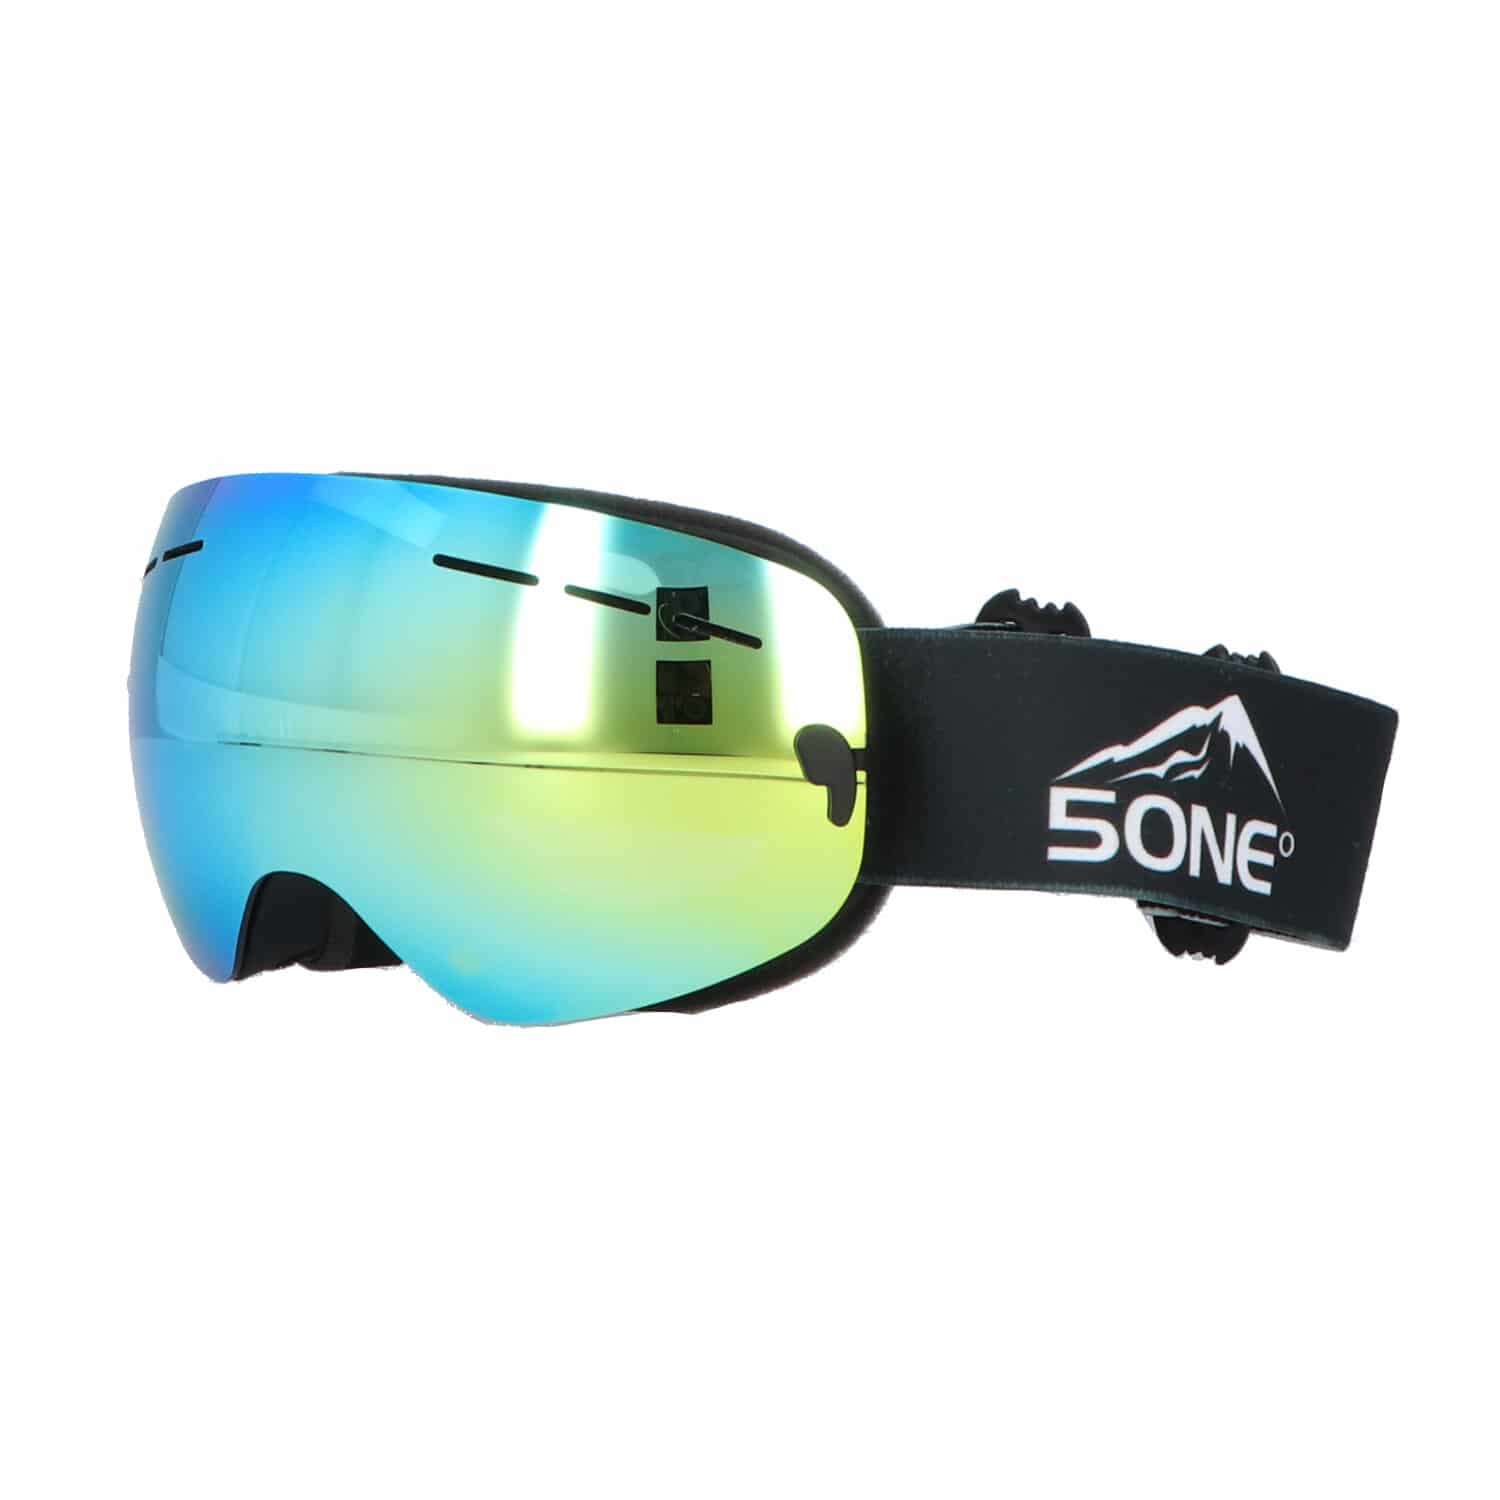 5one® Alpine 2 Gold revo Junior skibril - anti-condens - UV 400